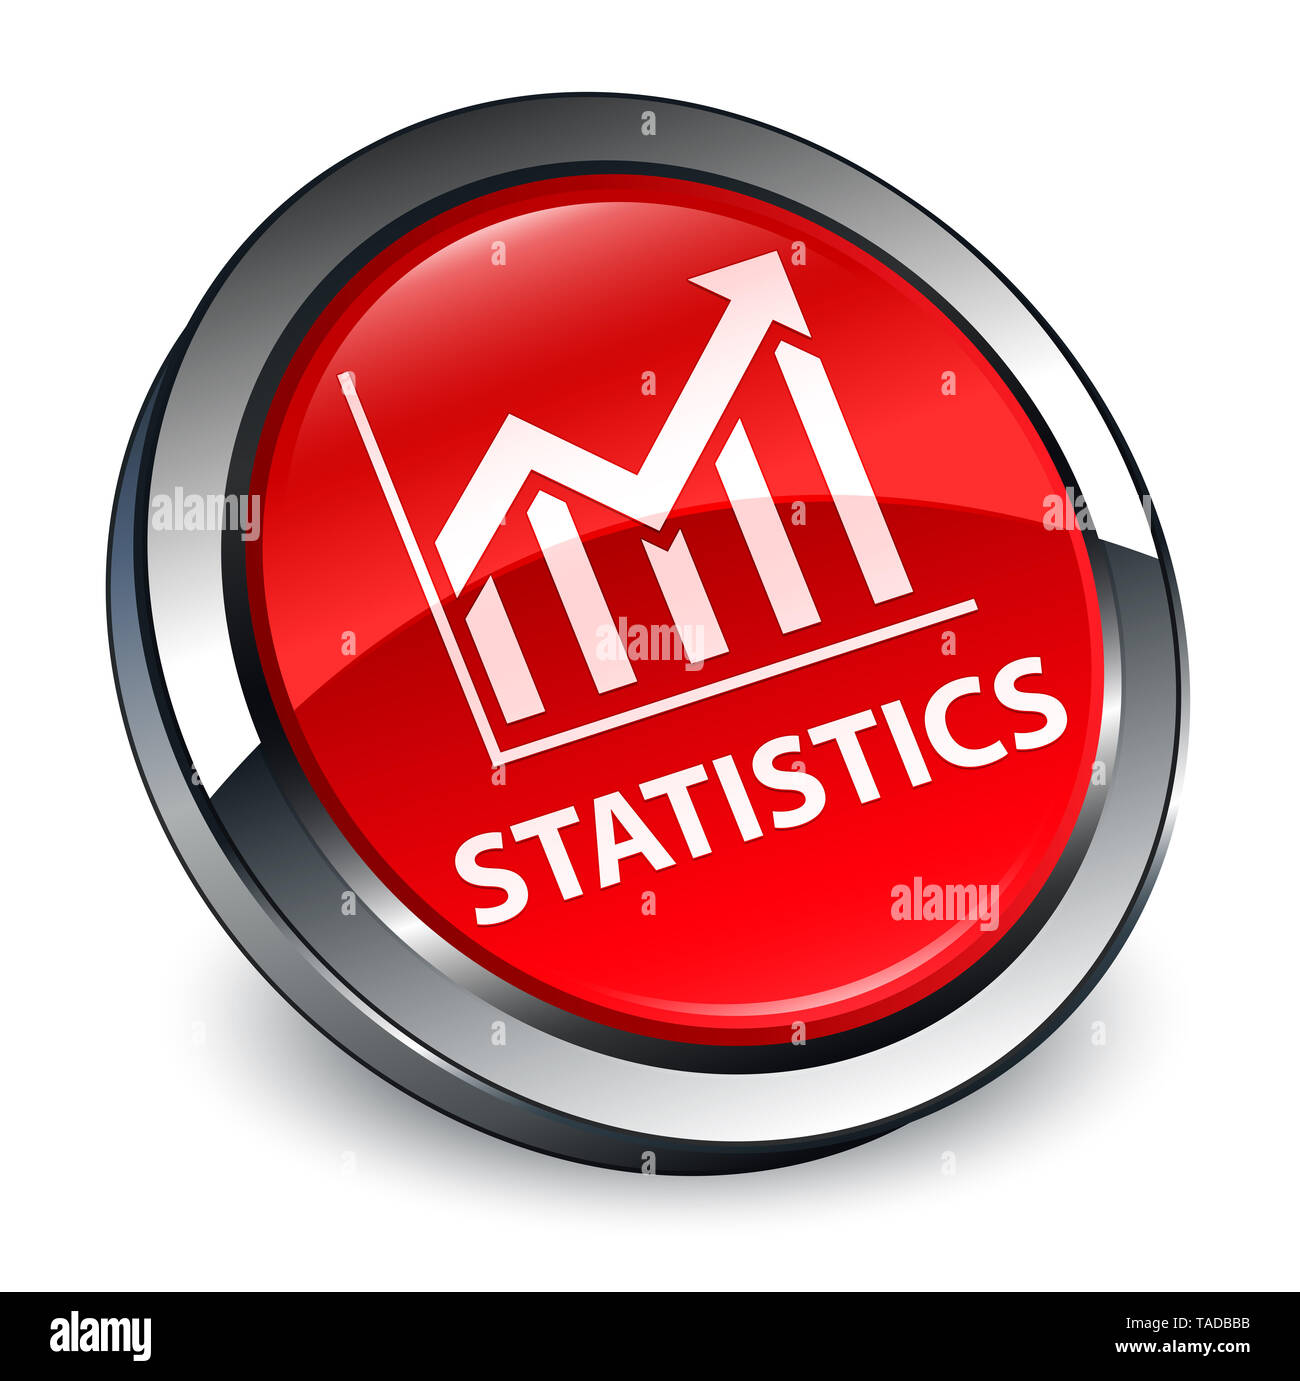 Statistiche isolati su 3d rosso pulsante rotondo illustrazione astratta Foto Stock